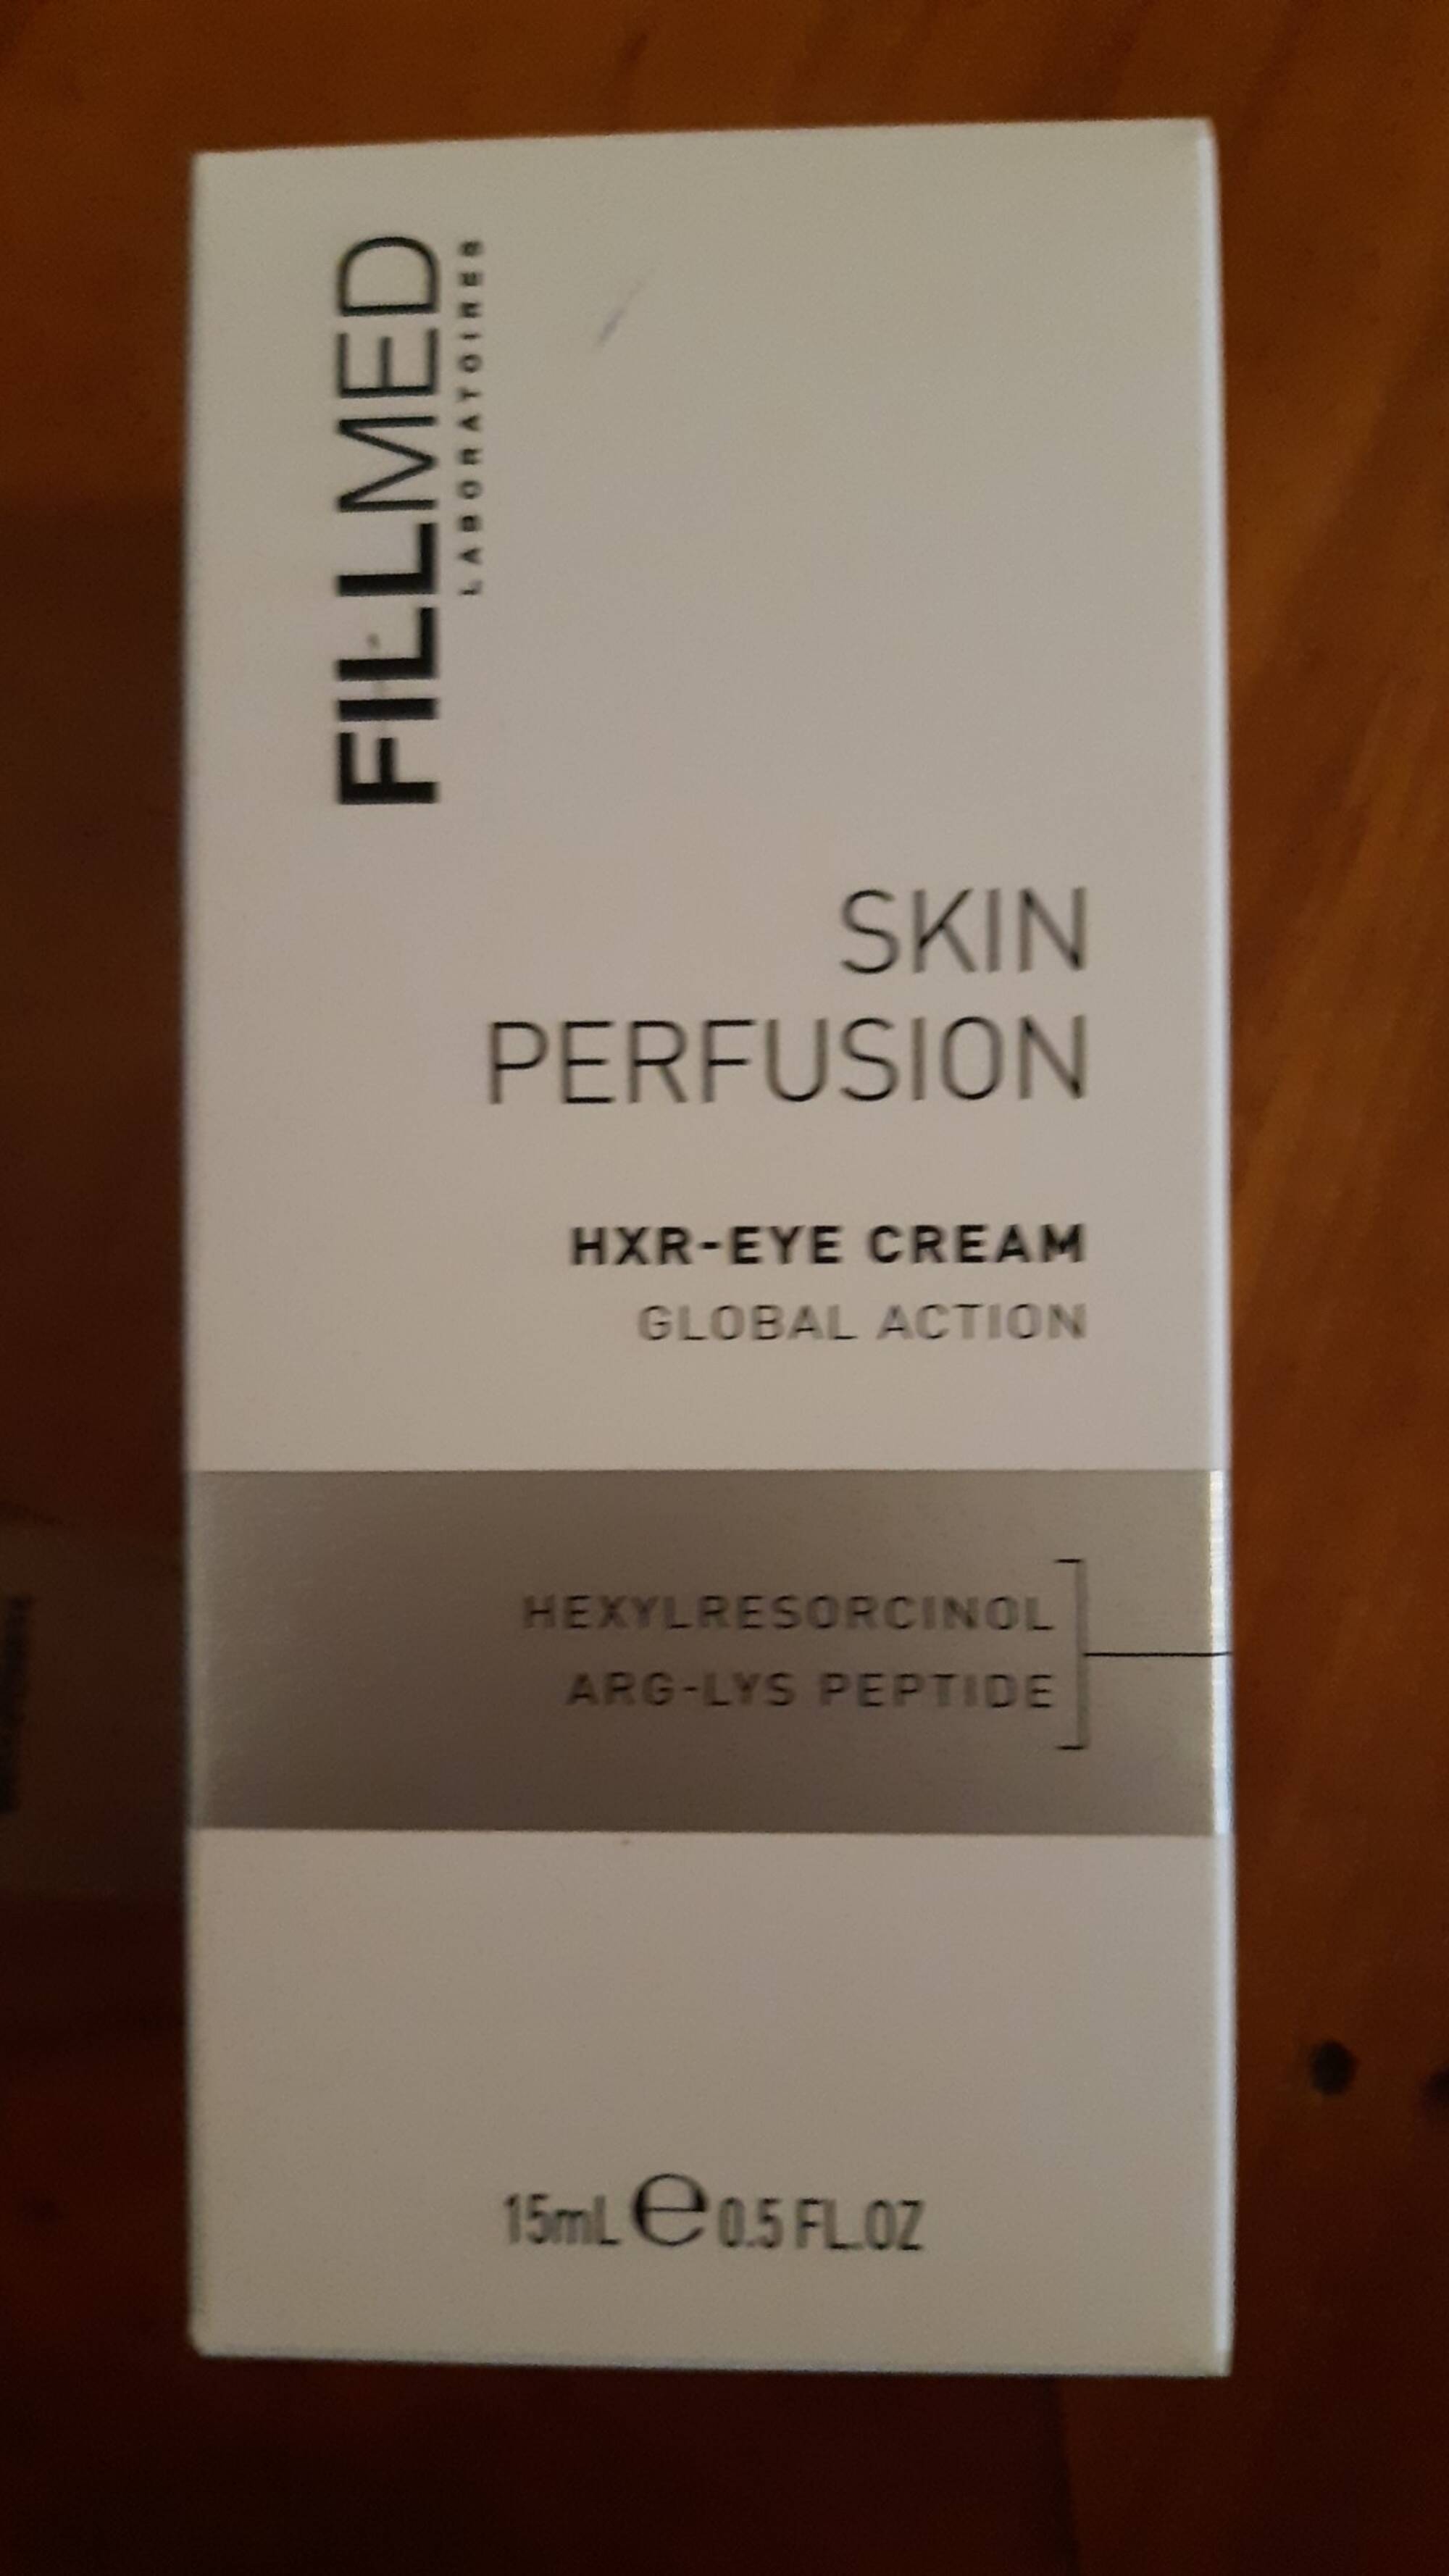 FILLMED - Skin perfusion - Hxr-eye cream